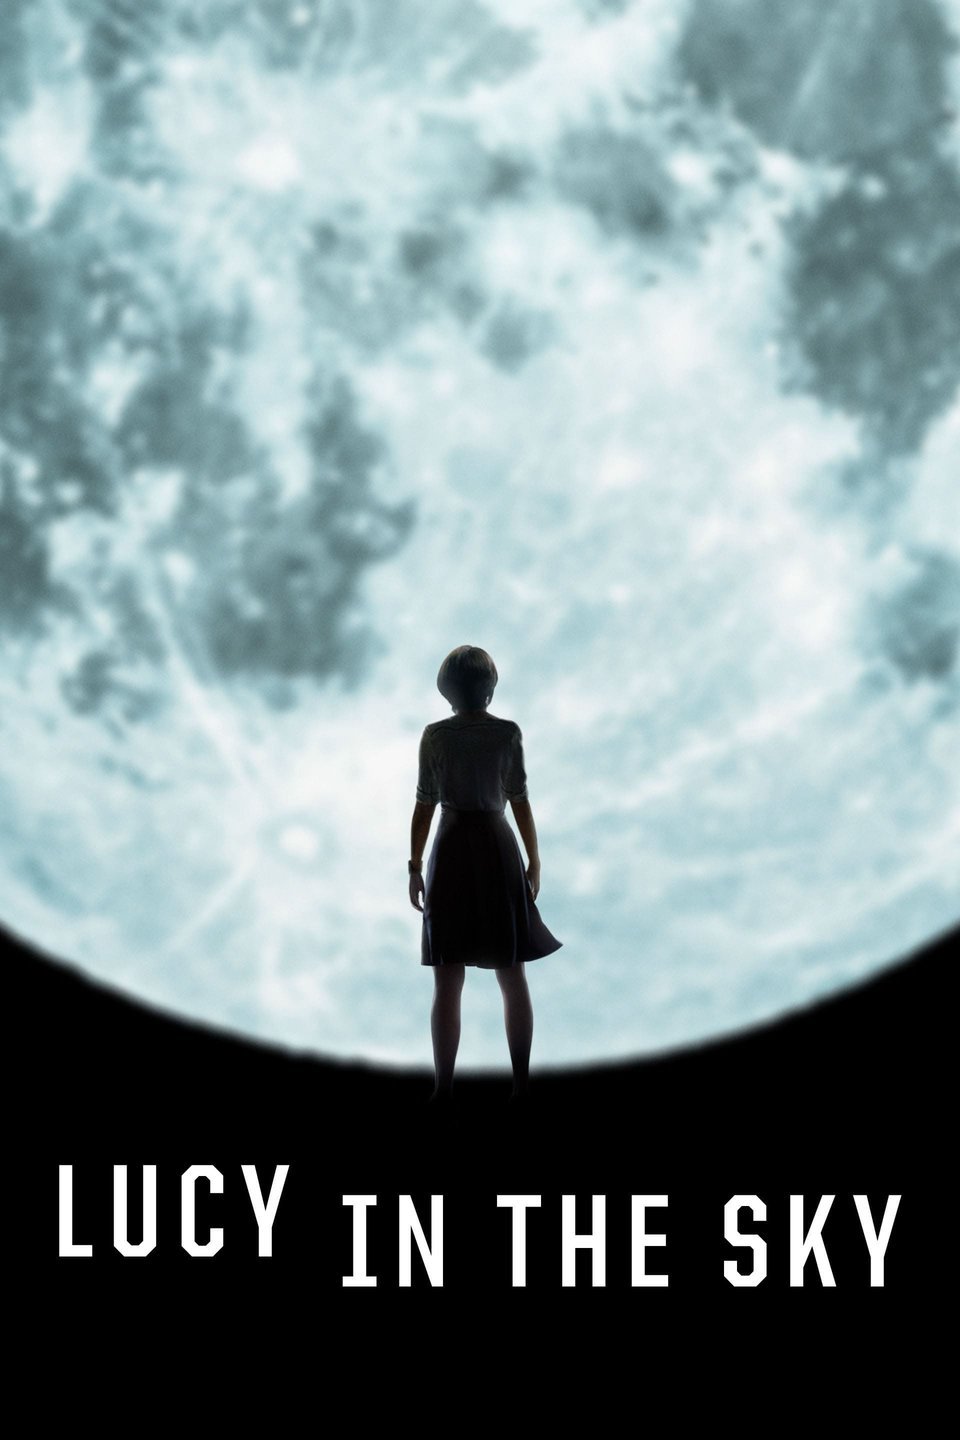 [ฝรั่ง] Lucy In The Sky (2019) ลูซี่ในท้องฟ้า [1080p] [พากย์ไทย 2.0 + เสียงอังกฤษ 5.1] [บรรยายไทย + อังกฤษ] [เสียงไทยมาสเตอร์ + ซับไทย] [PANDAFILE]